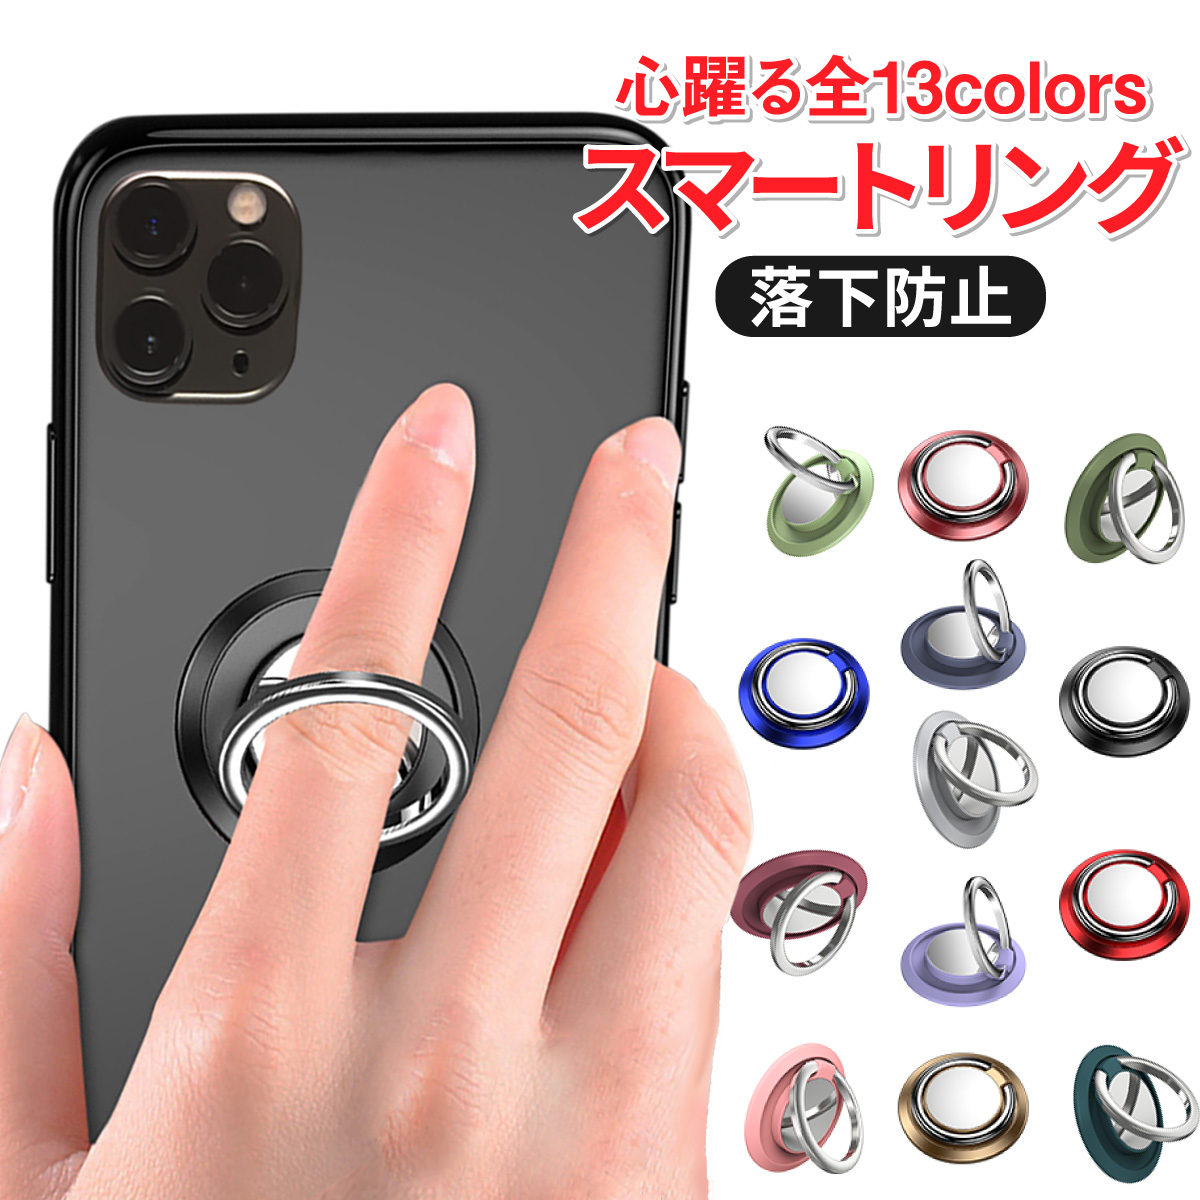 スマホリング バンカーリング iPhone 12 限定モデル Mini 11 日本全国 送料無料 Pro Max XS リング スマホ ガラス貼り付け おしゃれ 安定 軽い ホールドリング マグネット対応 可愛い 指輪型 かわいい ホルダー 落下防止 リングスタンド 薄い Xperia